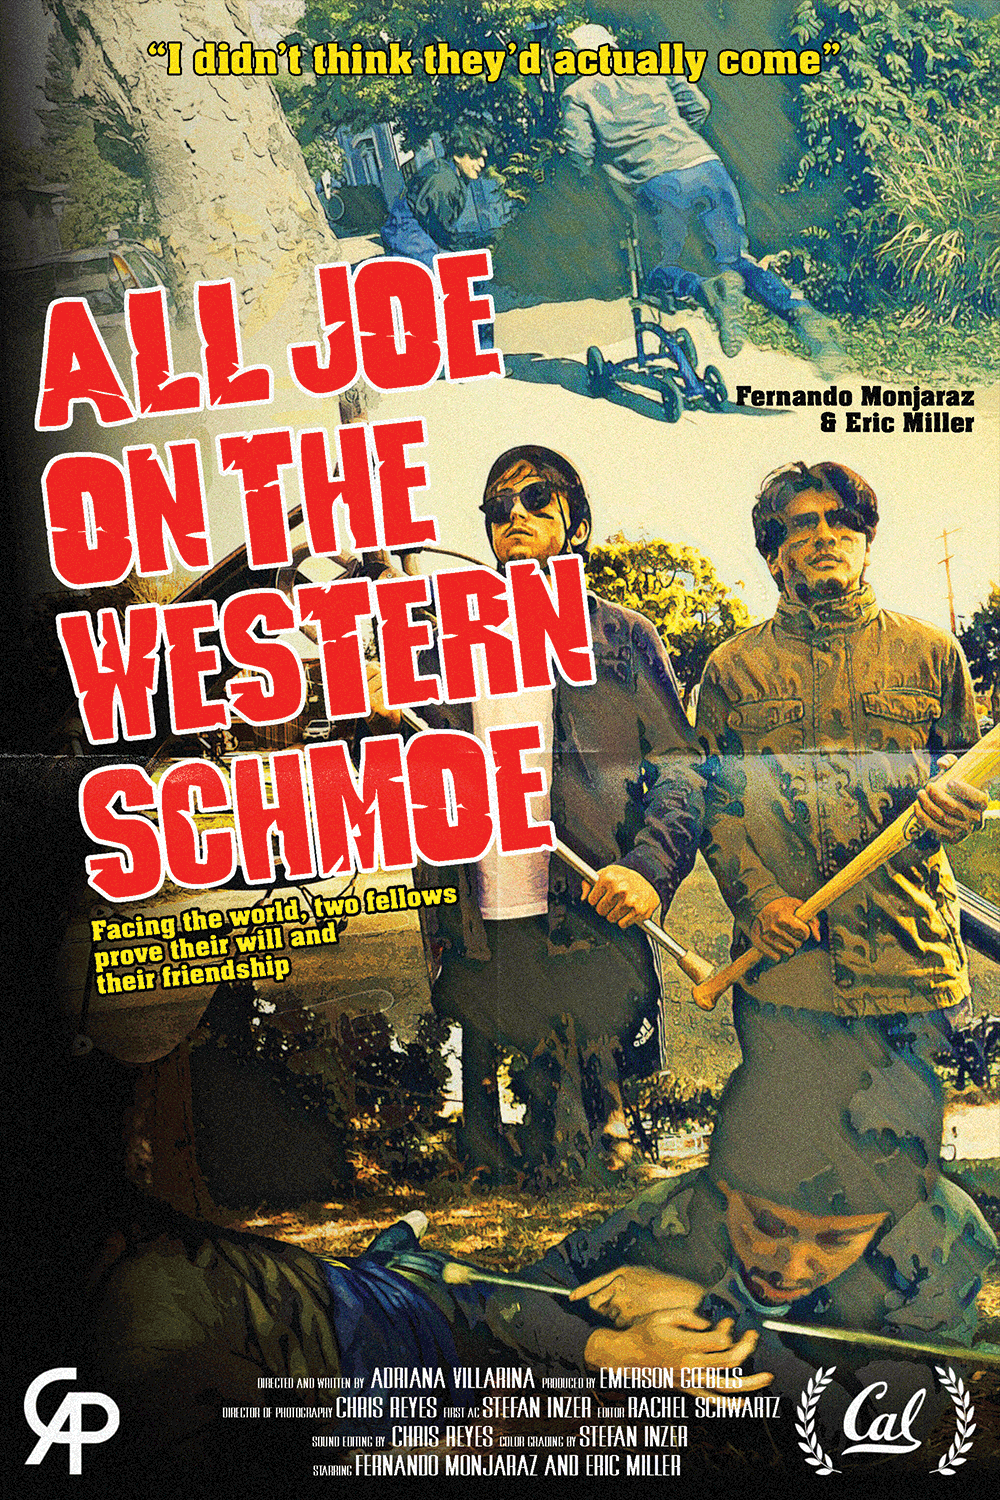 All Joe on the Western Schmoe